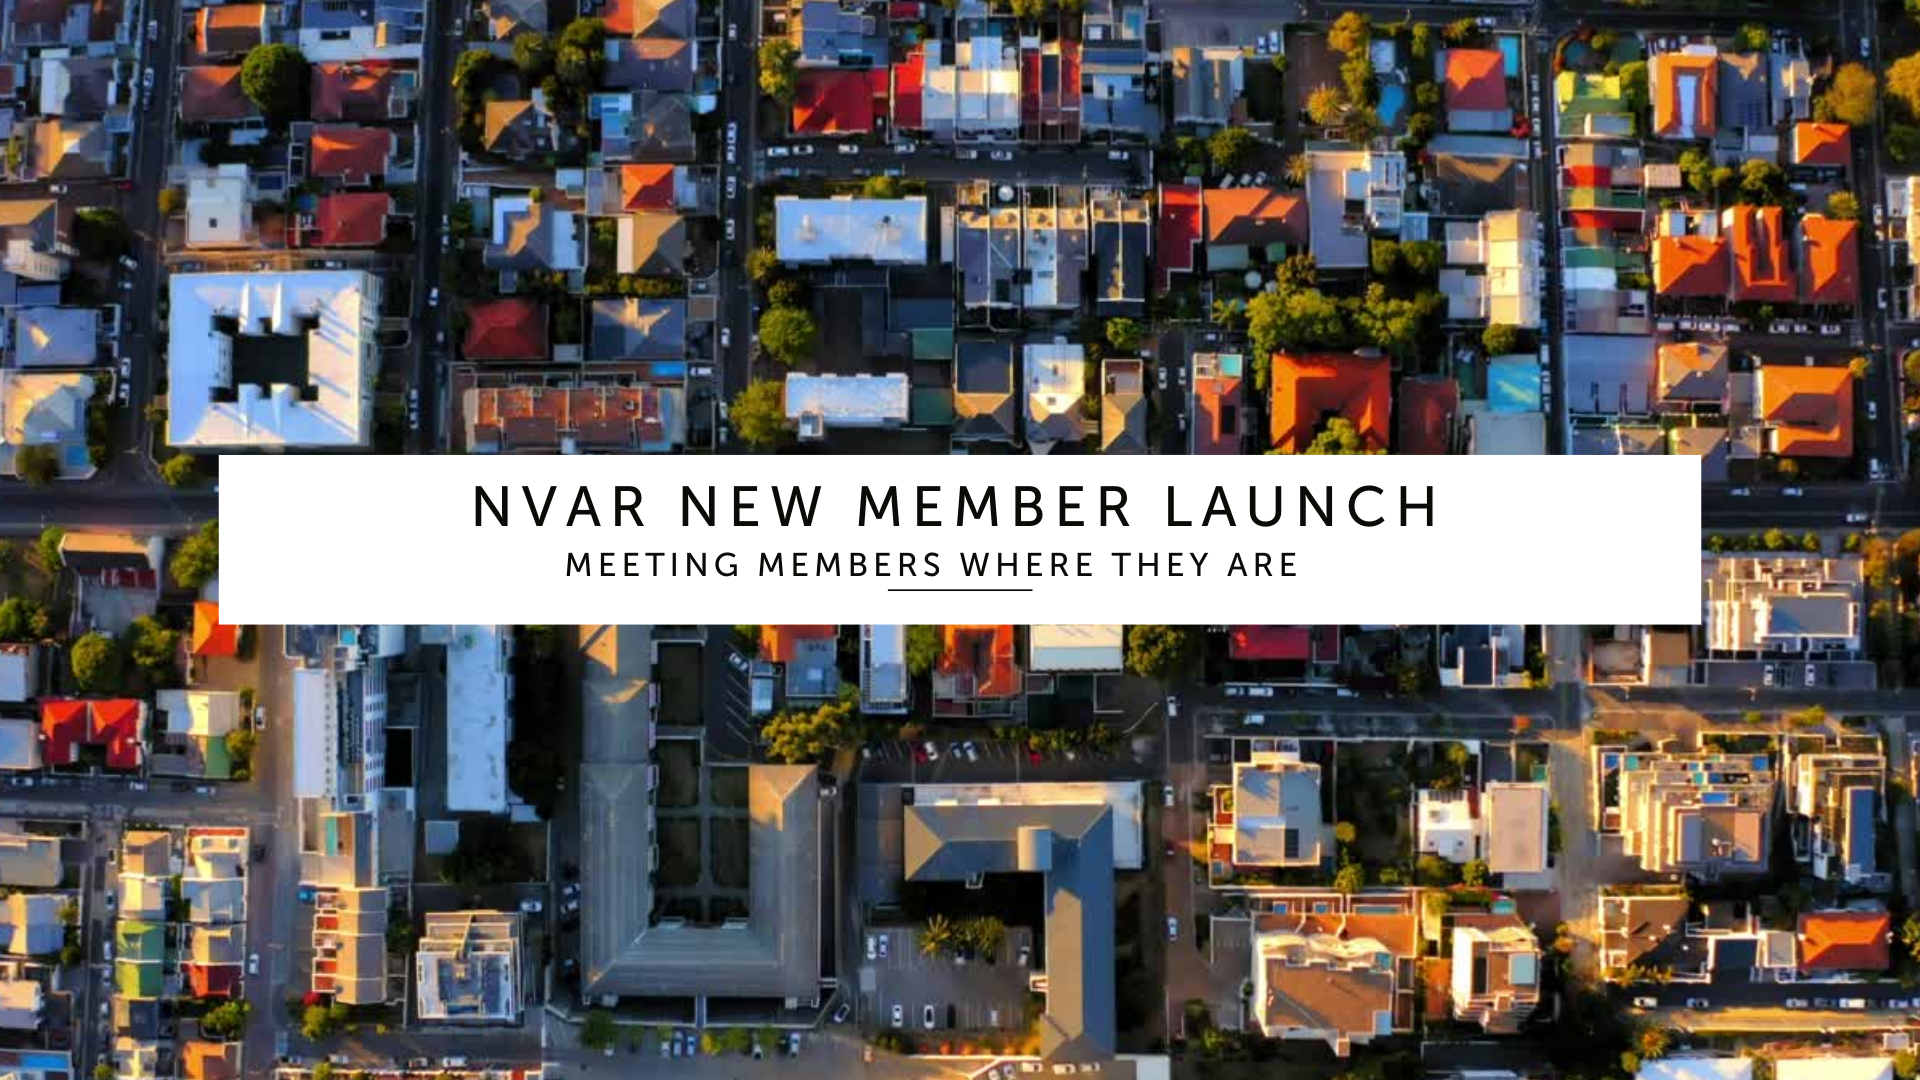 NVAR New Member Launch